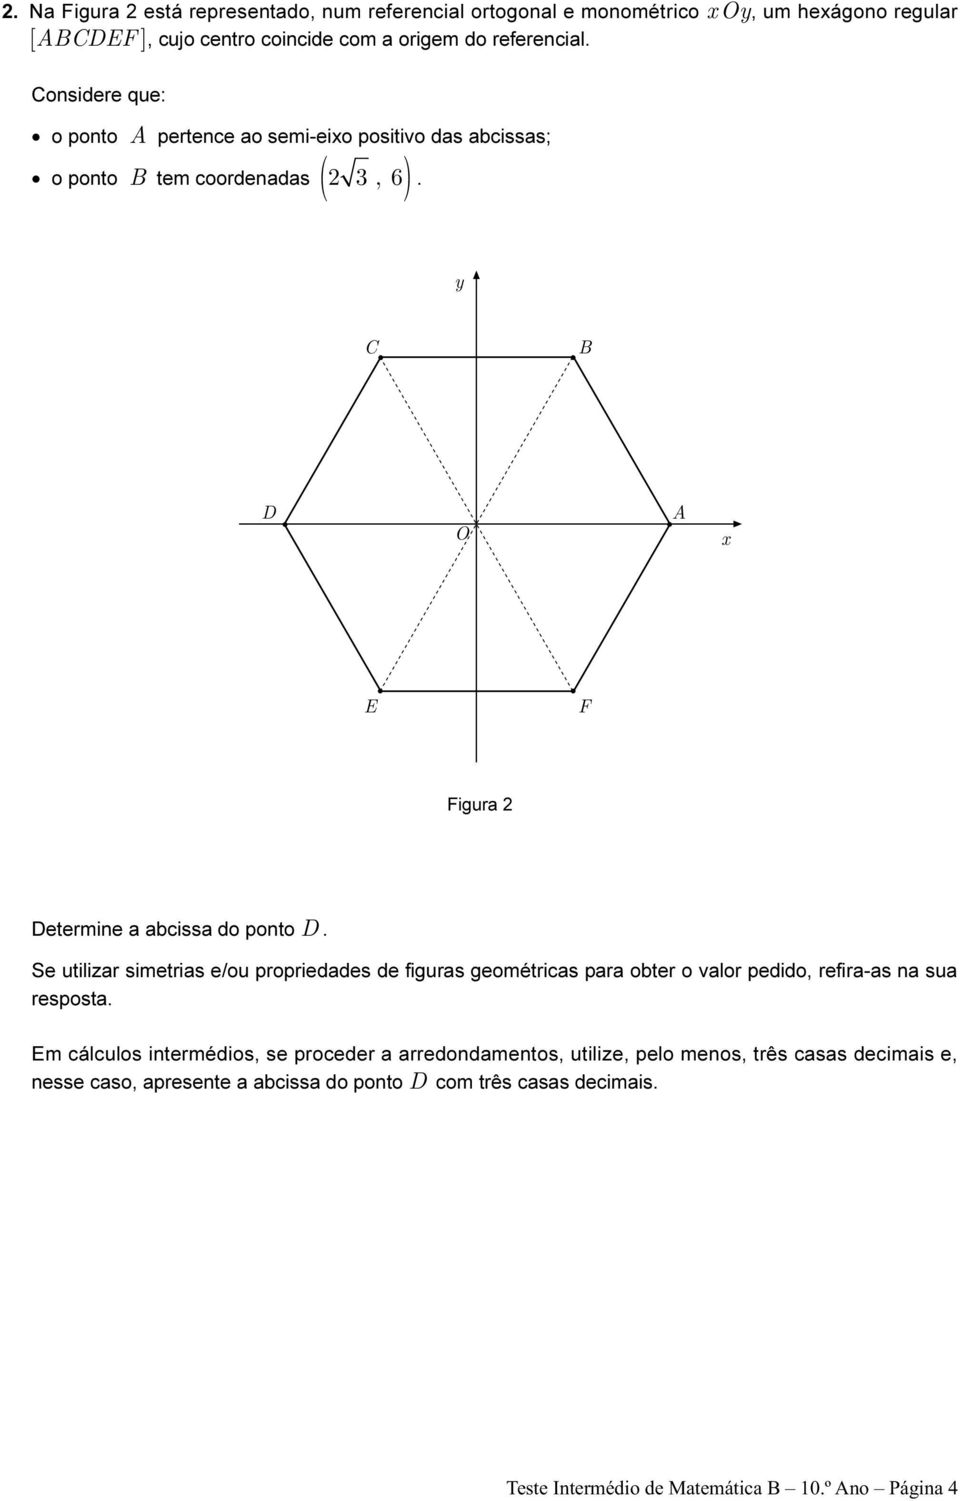 Se utilizar simetrias e/ou propriedades de figuras geométricas para obter o valor pedido, refira-as na sua resposta.